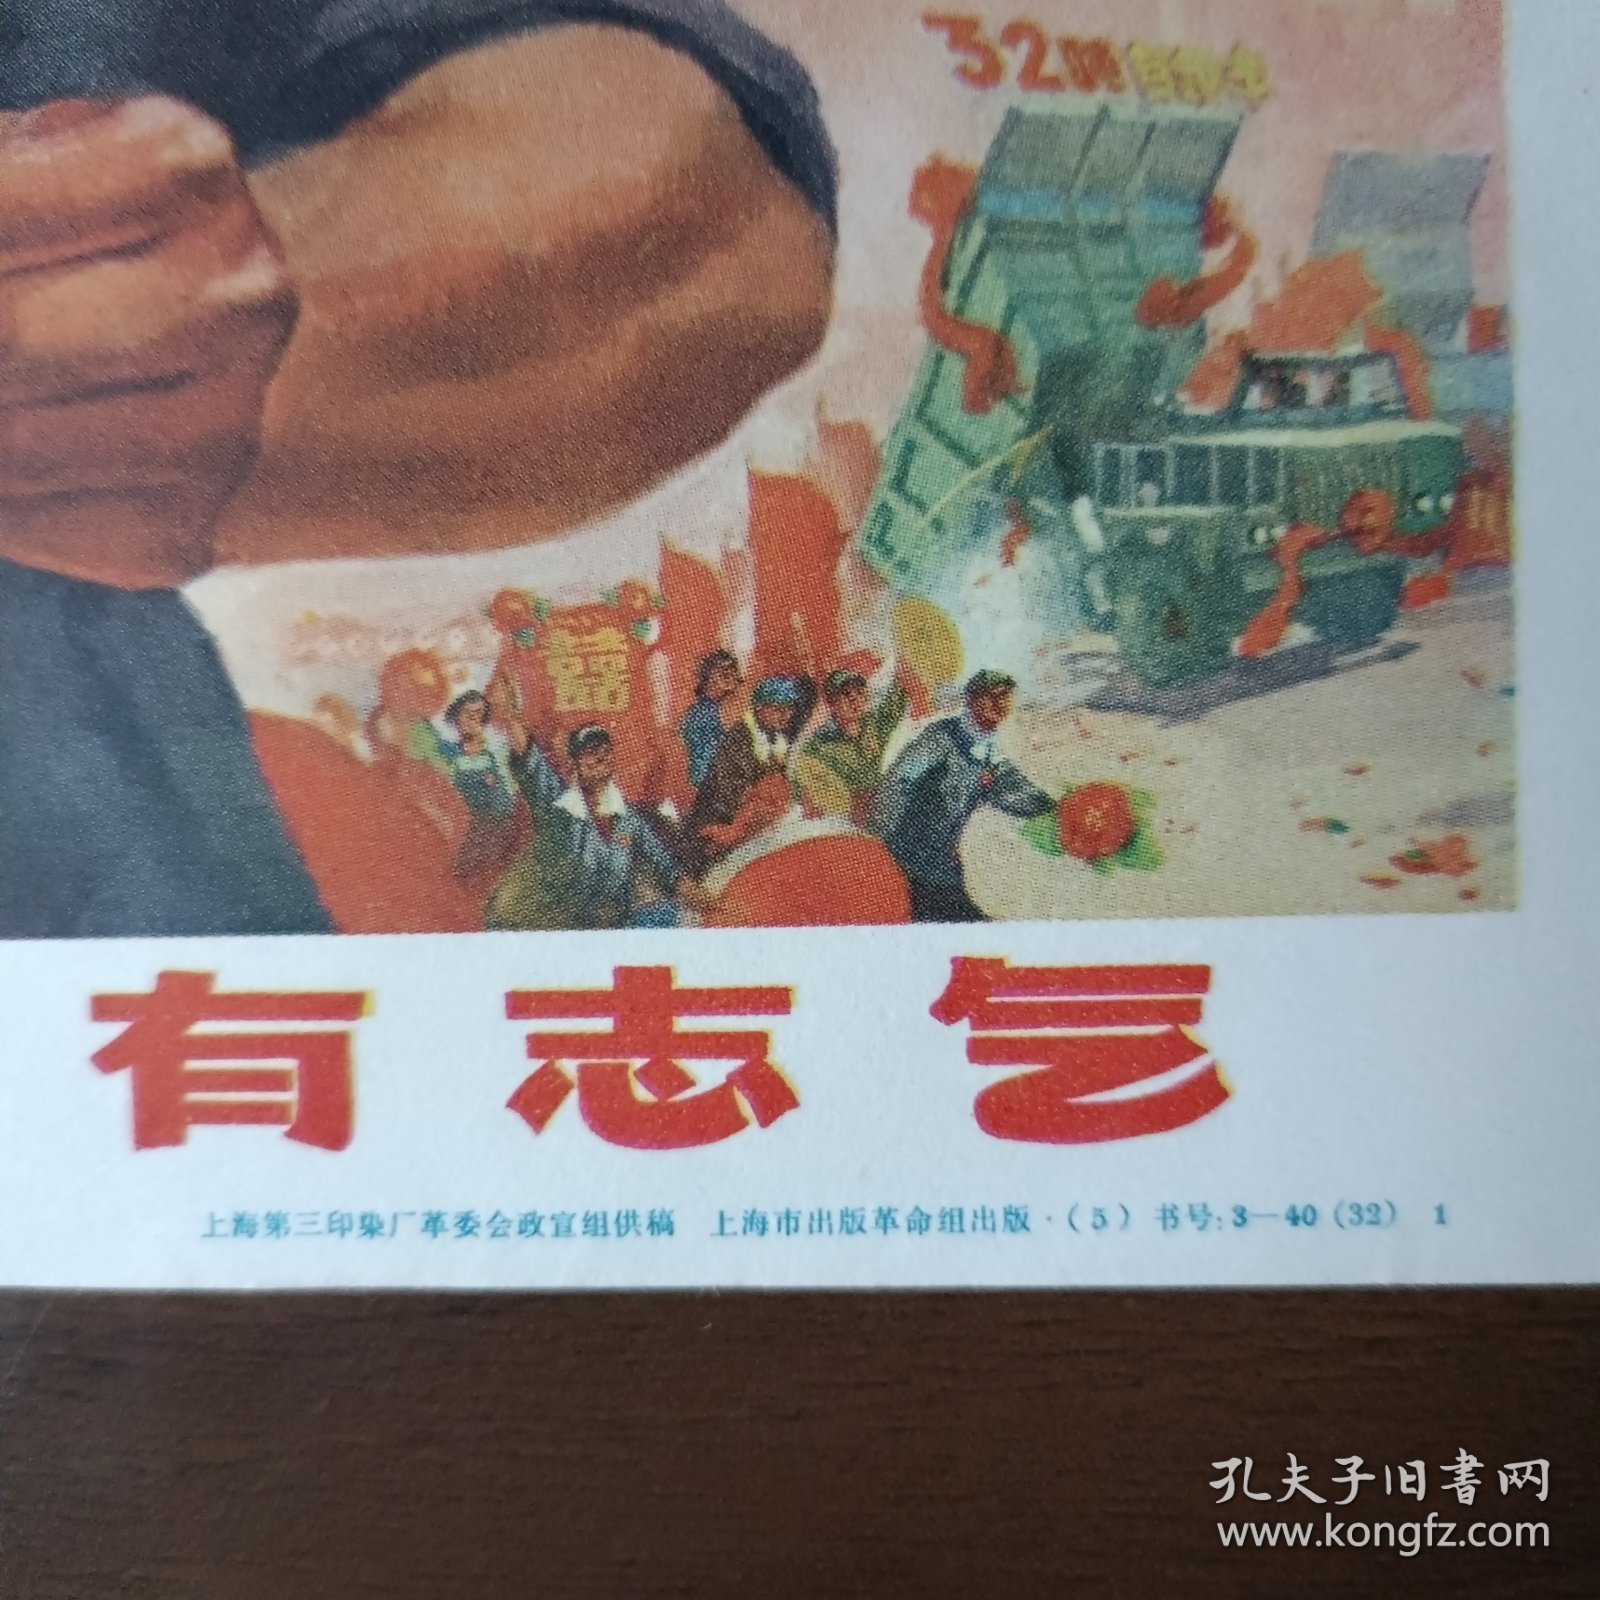 32开宣传画：中国人民有志气（六、七十年代 上海市出版革命组出版）